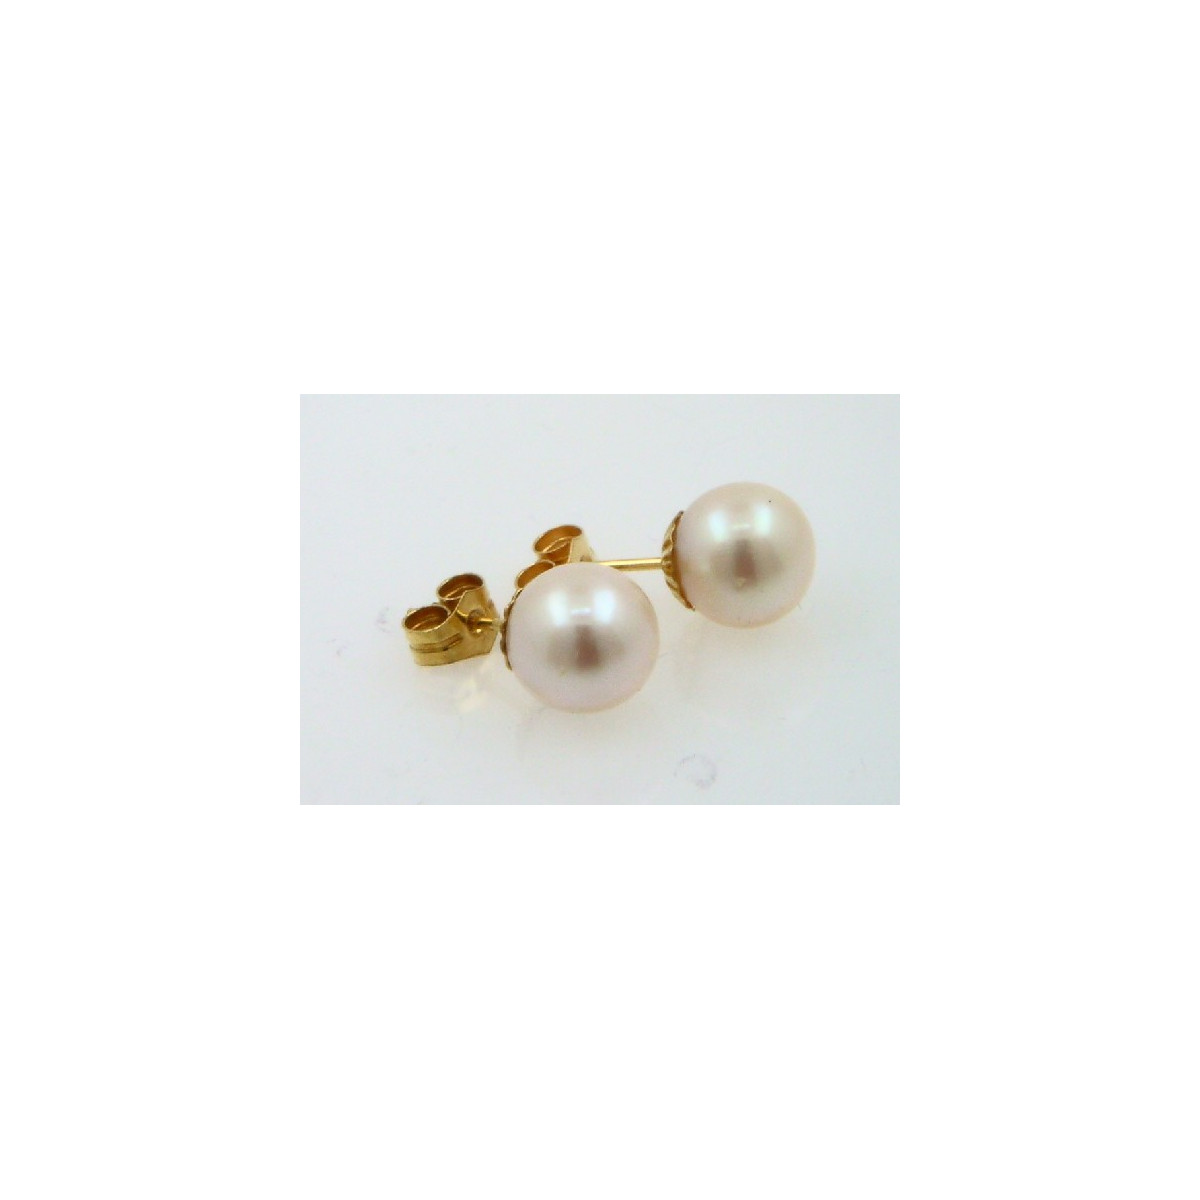 Pendientes oro 750 con perlas cultivadas